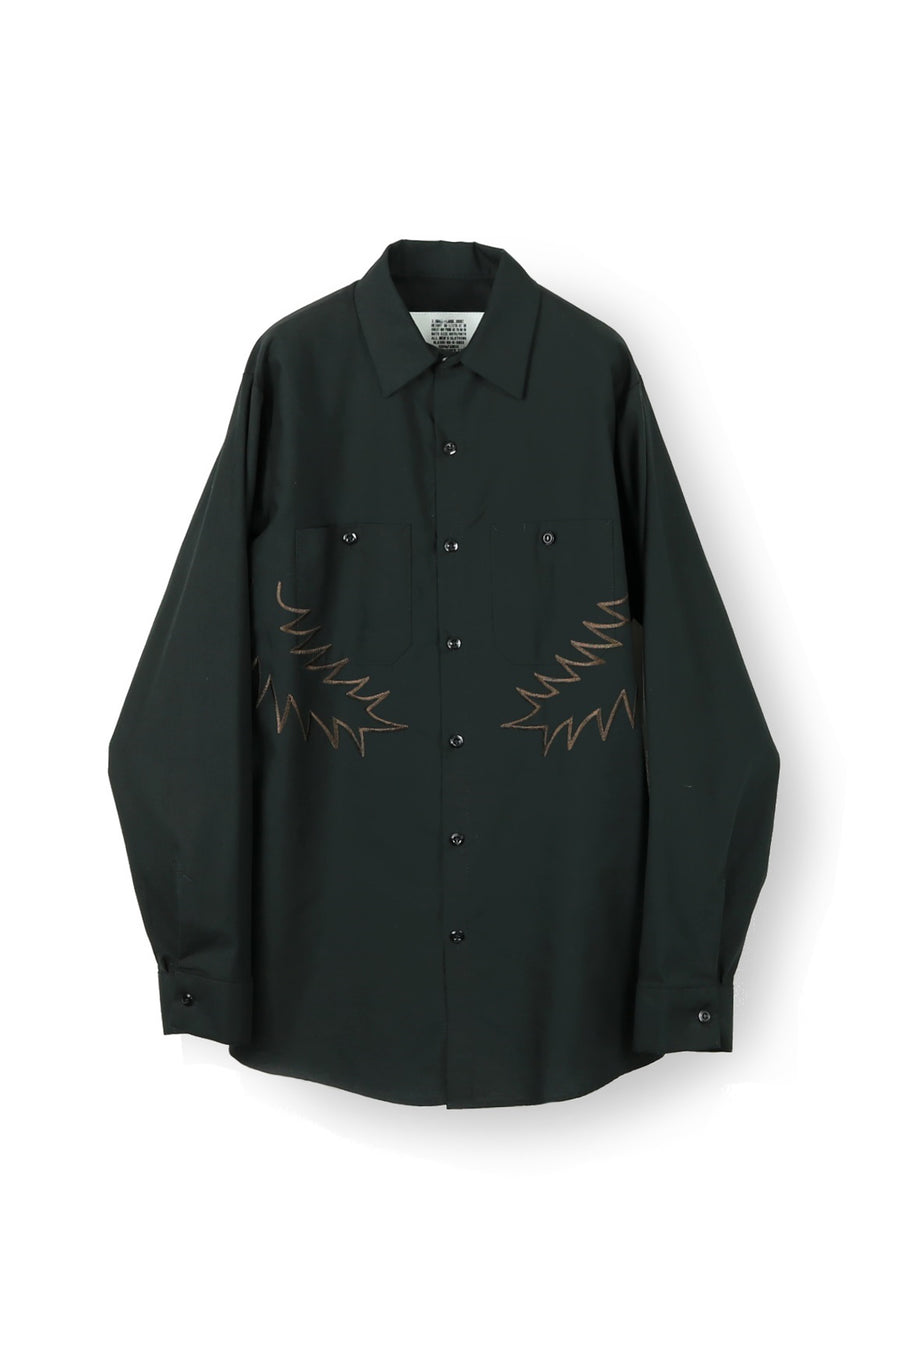 elephant TRIBAL fabrics Palm leaf embroidery work shirt（BLACK）